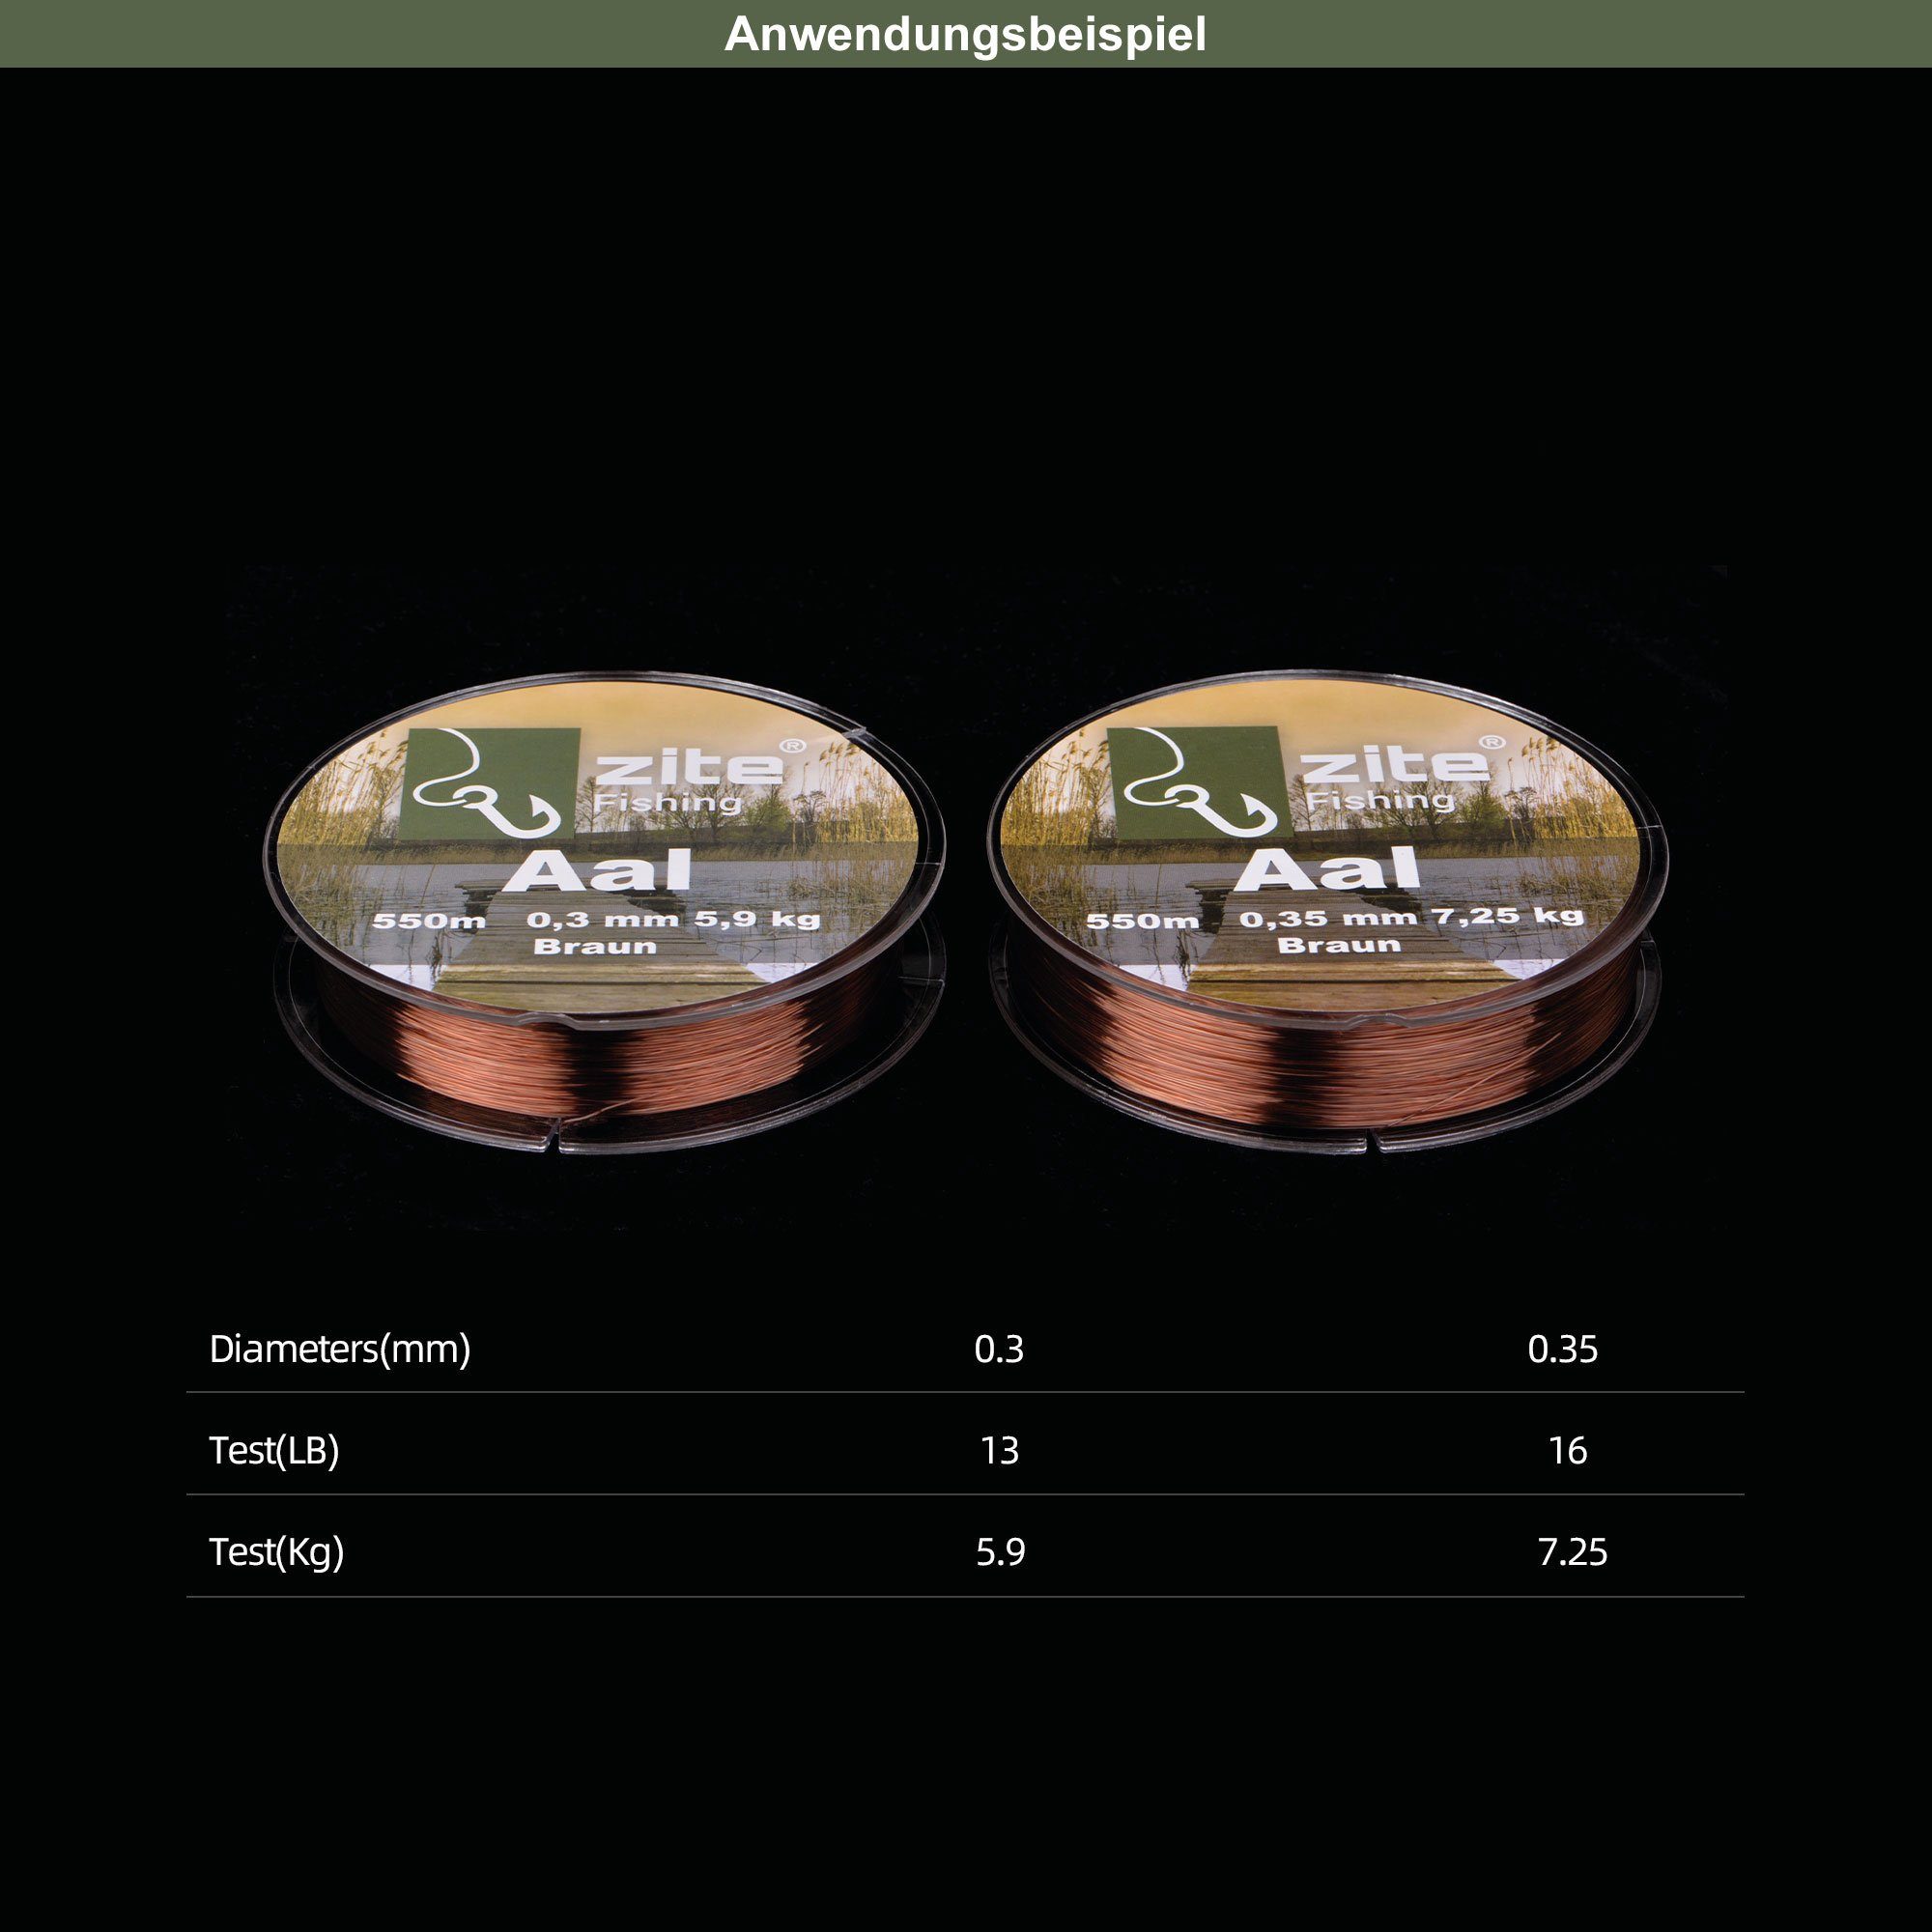 Grundangeln & Zite 0,30mm Angelschnur - 550m Angelschnur Braun monofile Posenangeln